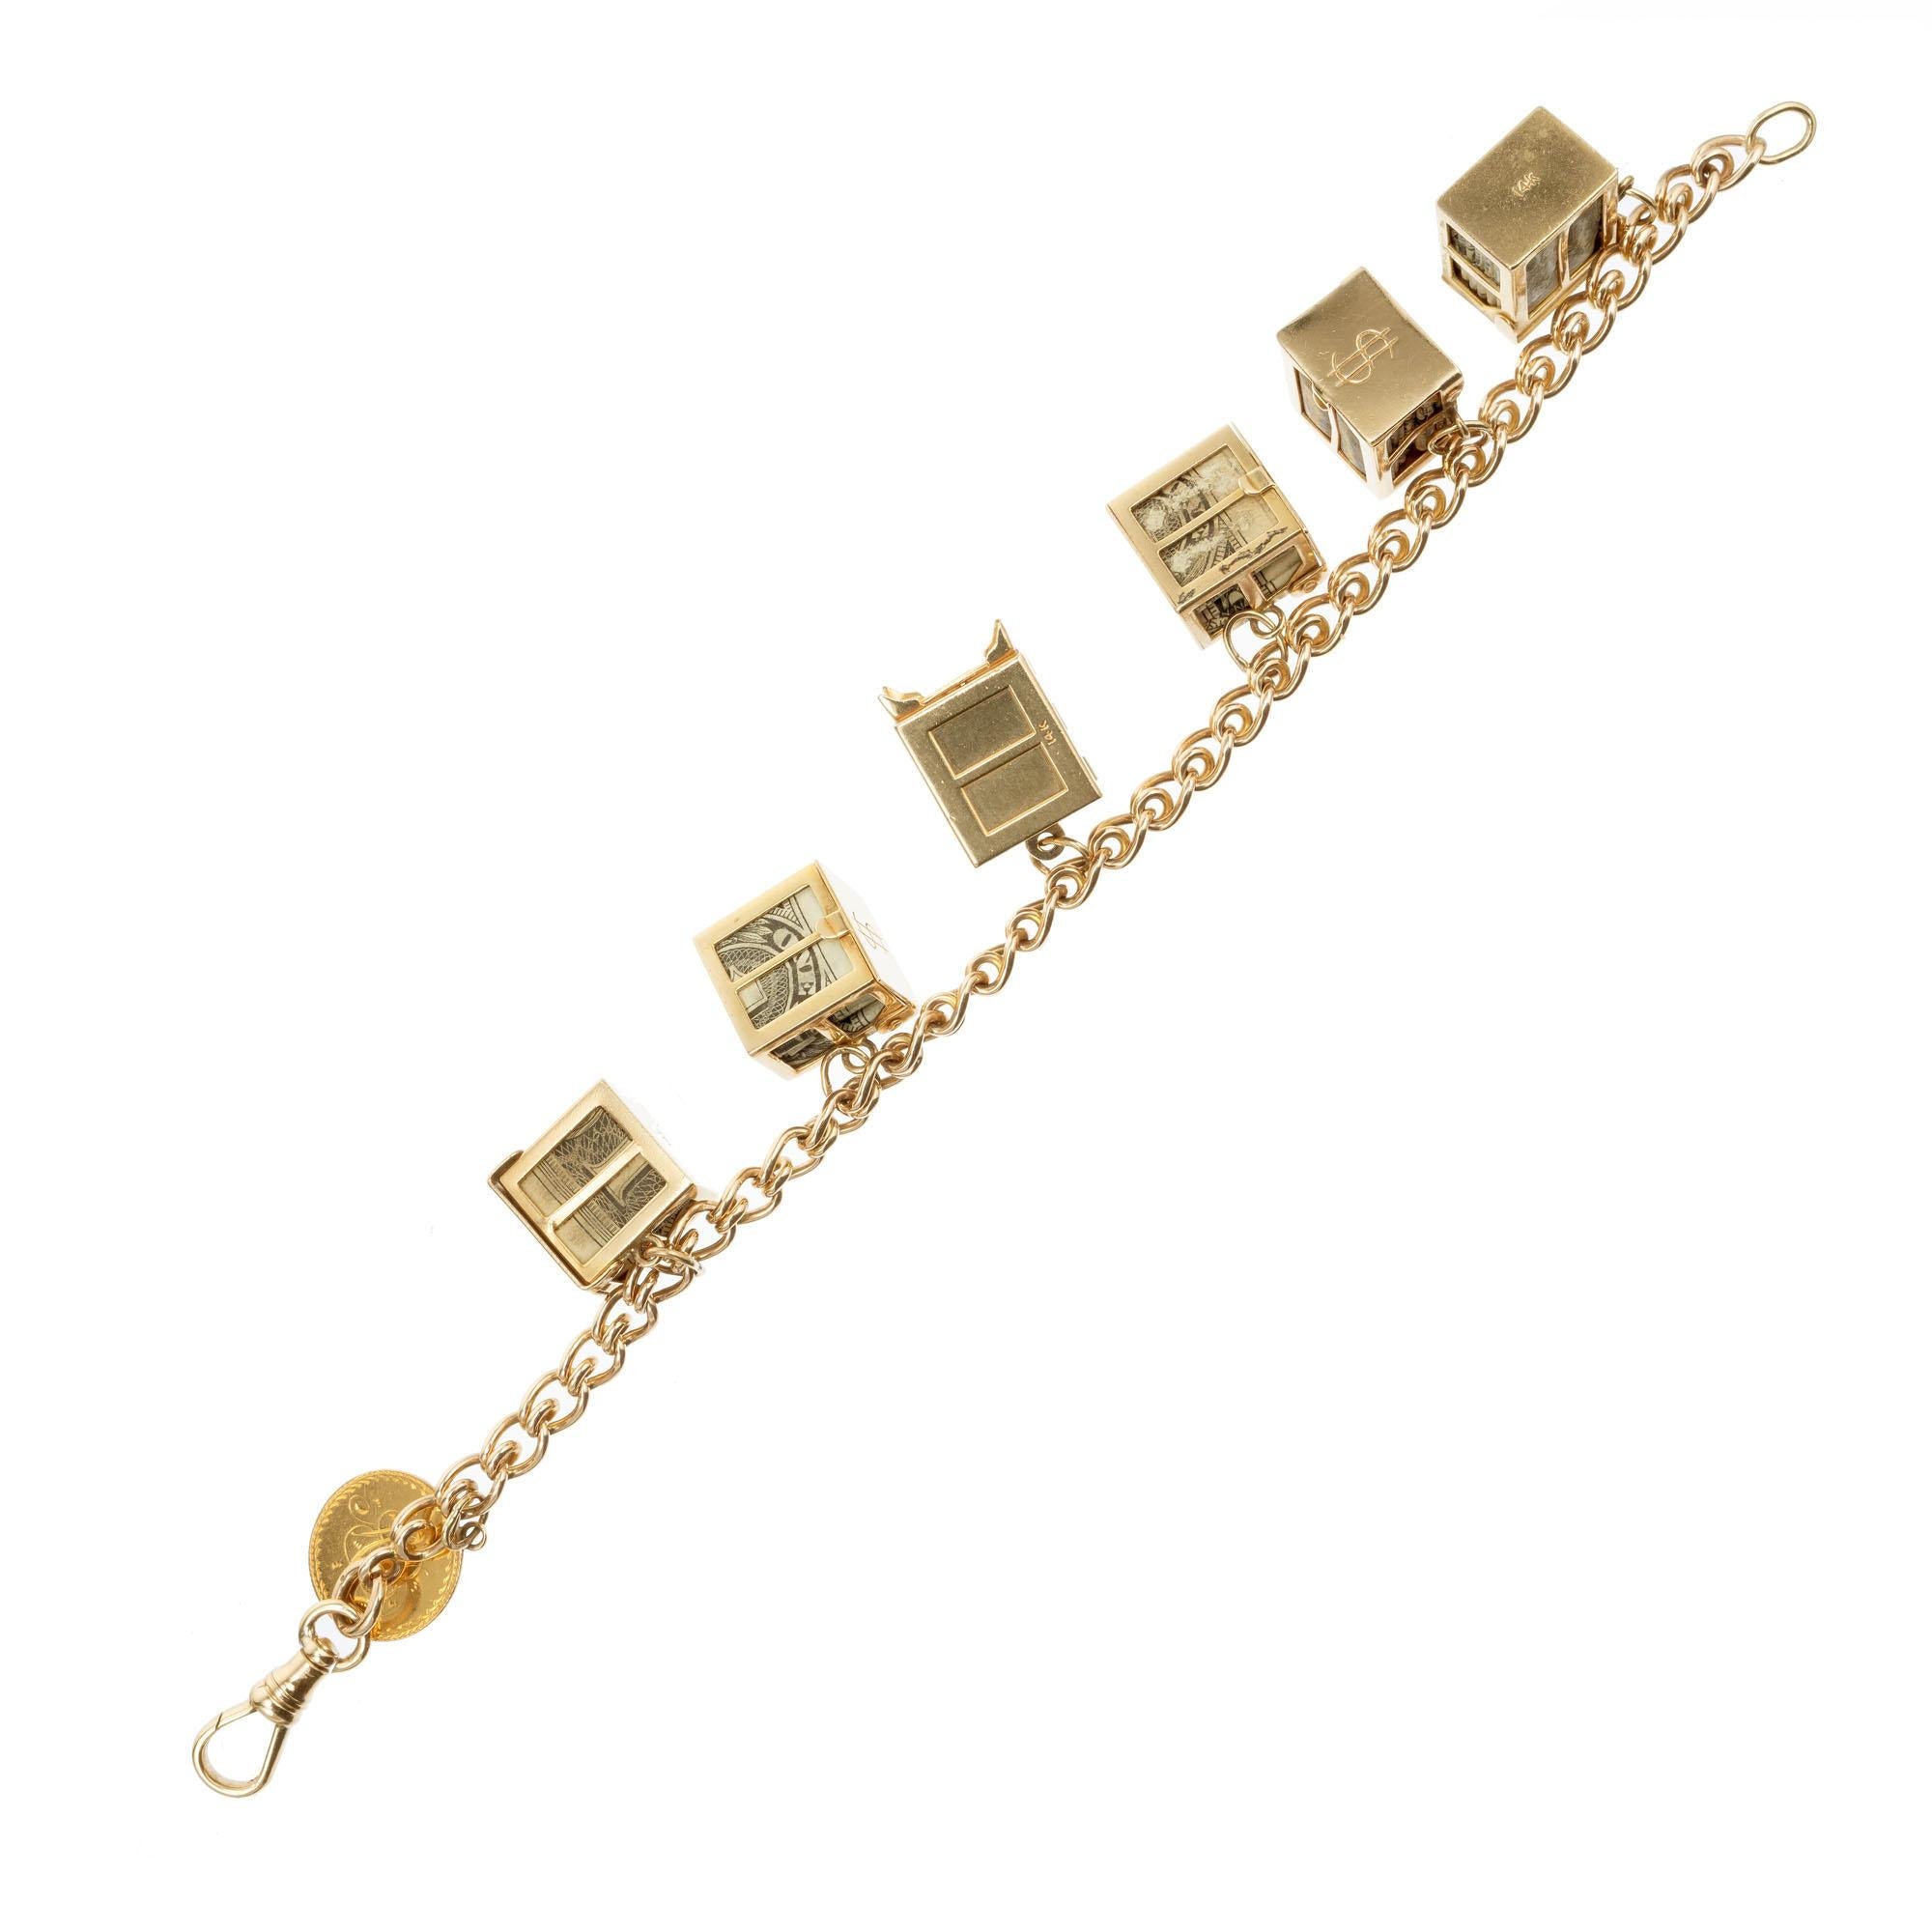 bracelet à breloques en or 14k des années 1960 sur le thème de l'argent fou. Cinq breloques argent fou, chacune avec un billet d'un dollar plié. 6 coffres-forts en or avec une pièce d'or gravée de 1852. Fabriqué à la main avec un loquet pivotant. 8